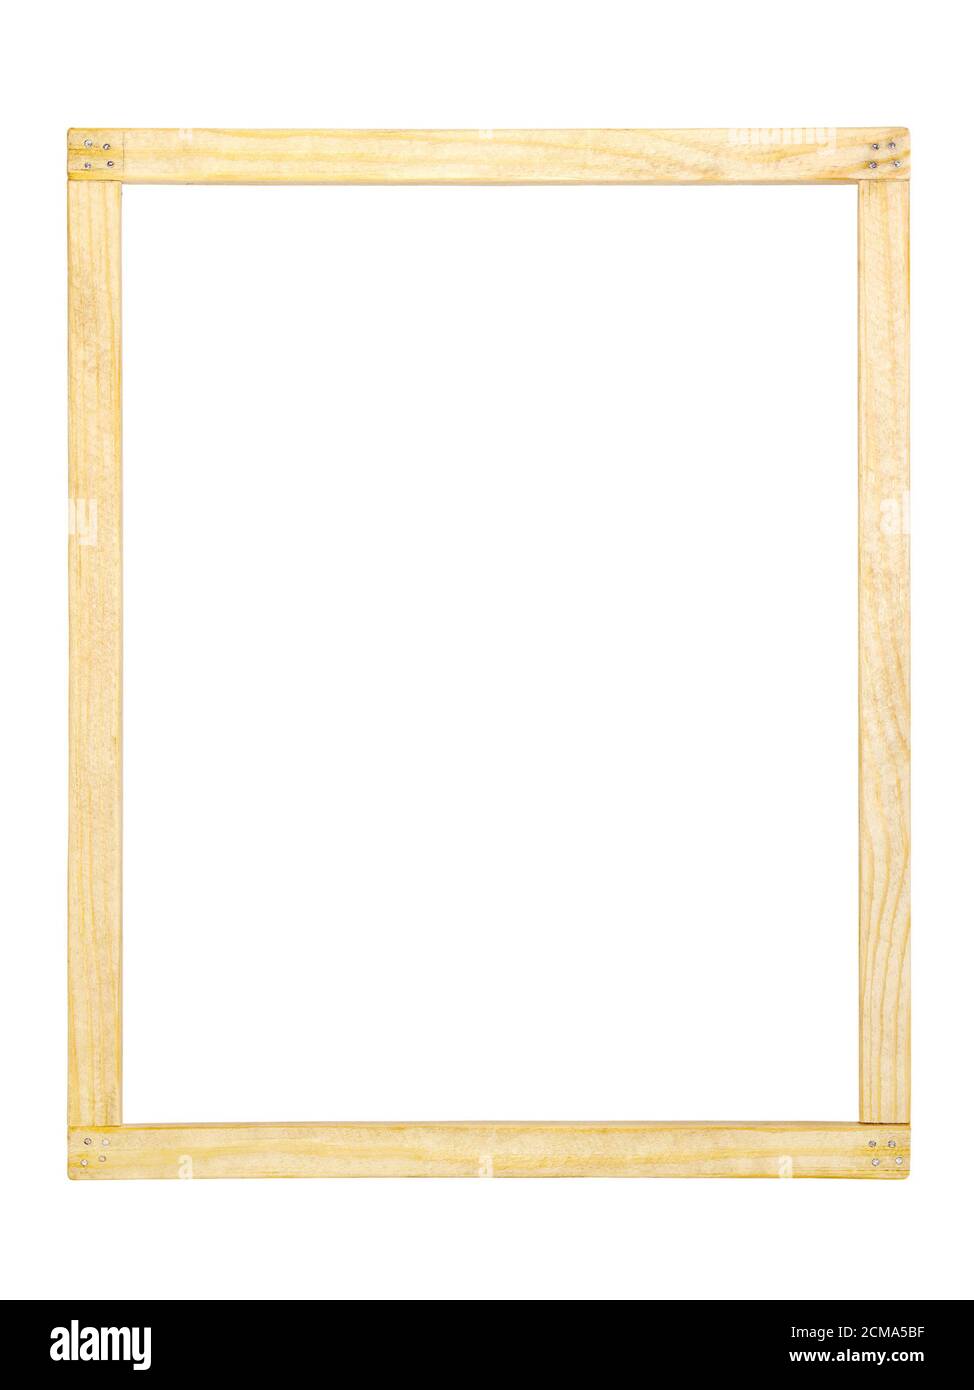 cadre en bois simple fait maison Photo Stock - Alamy